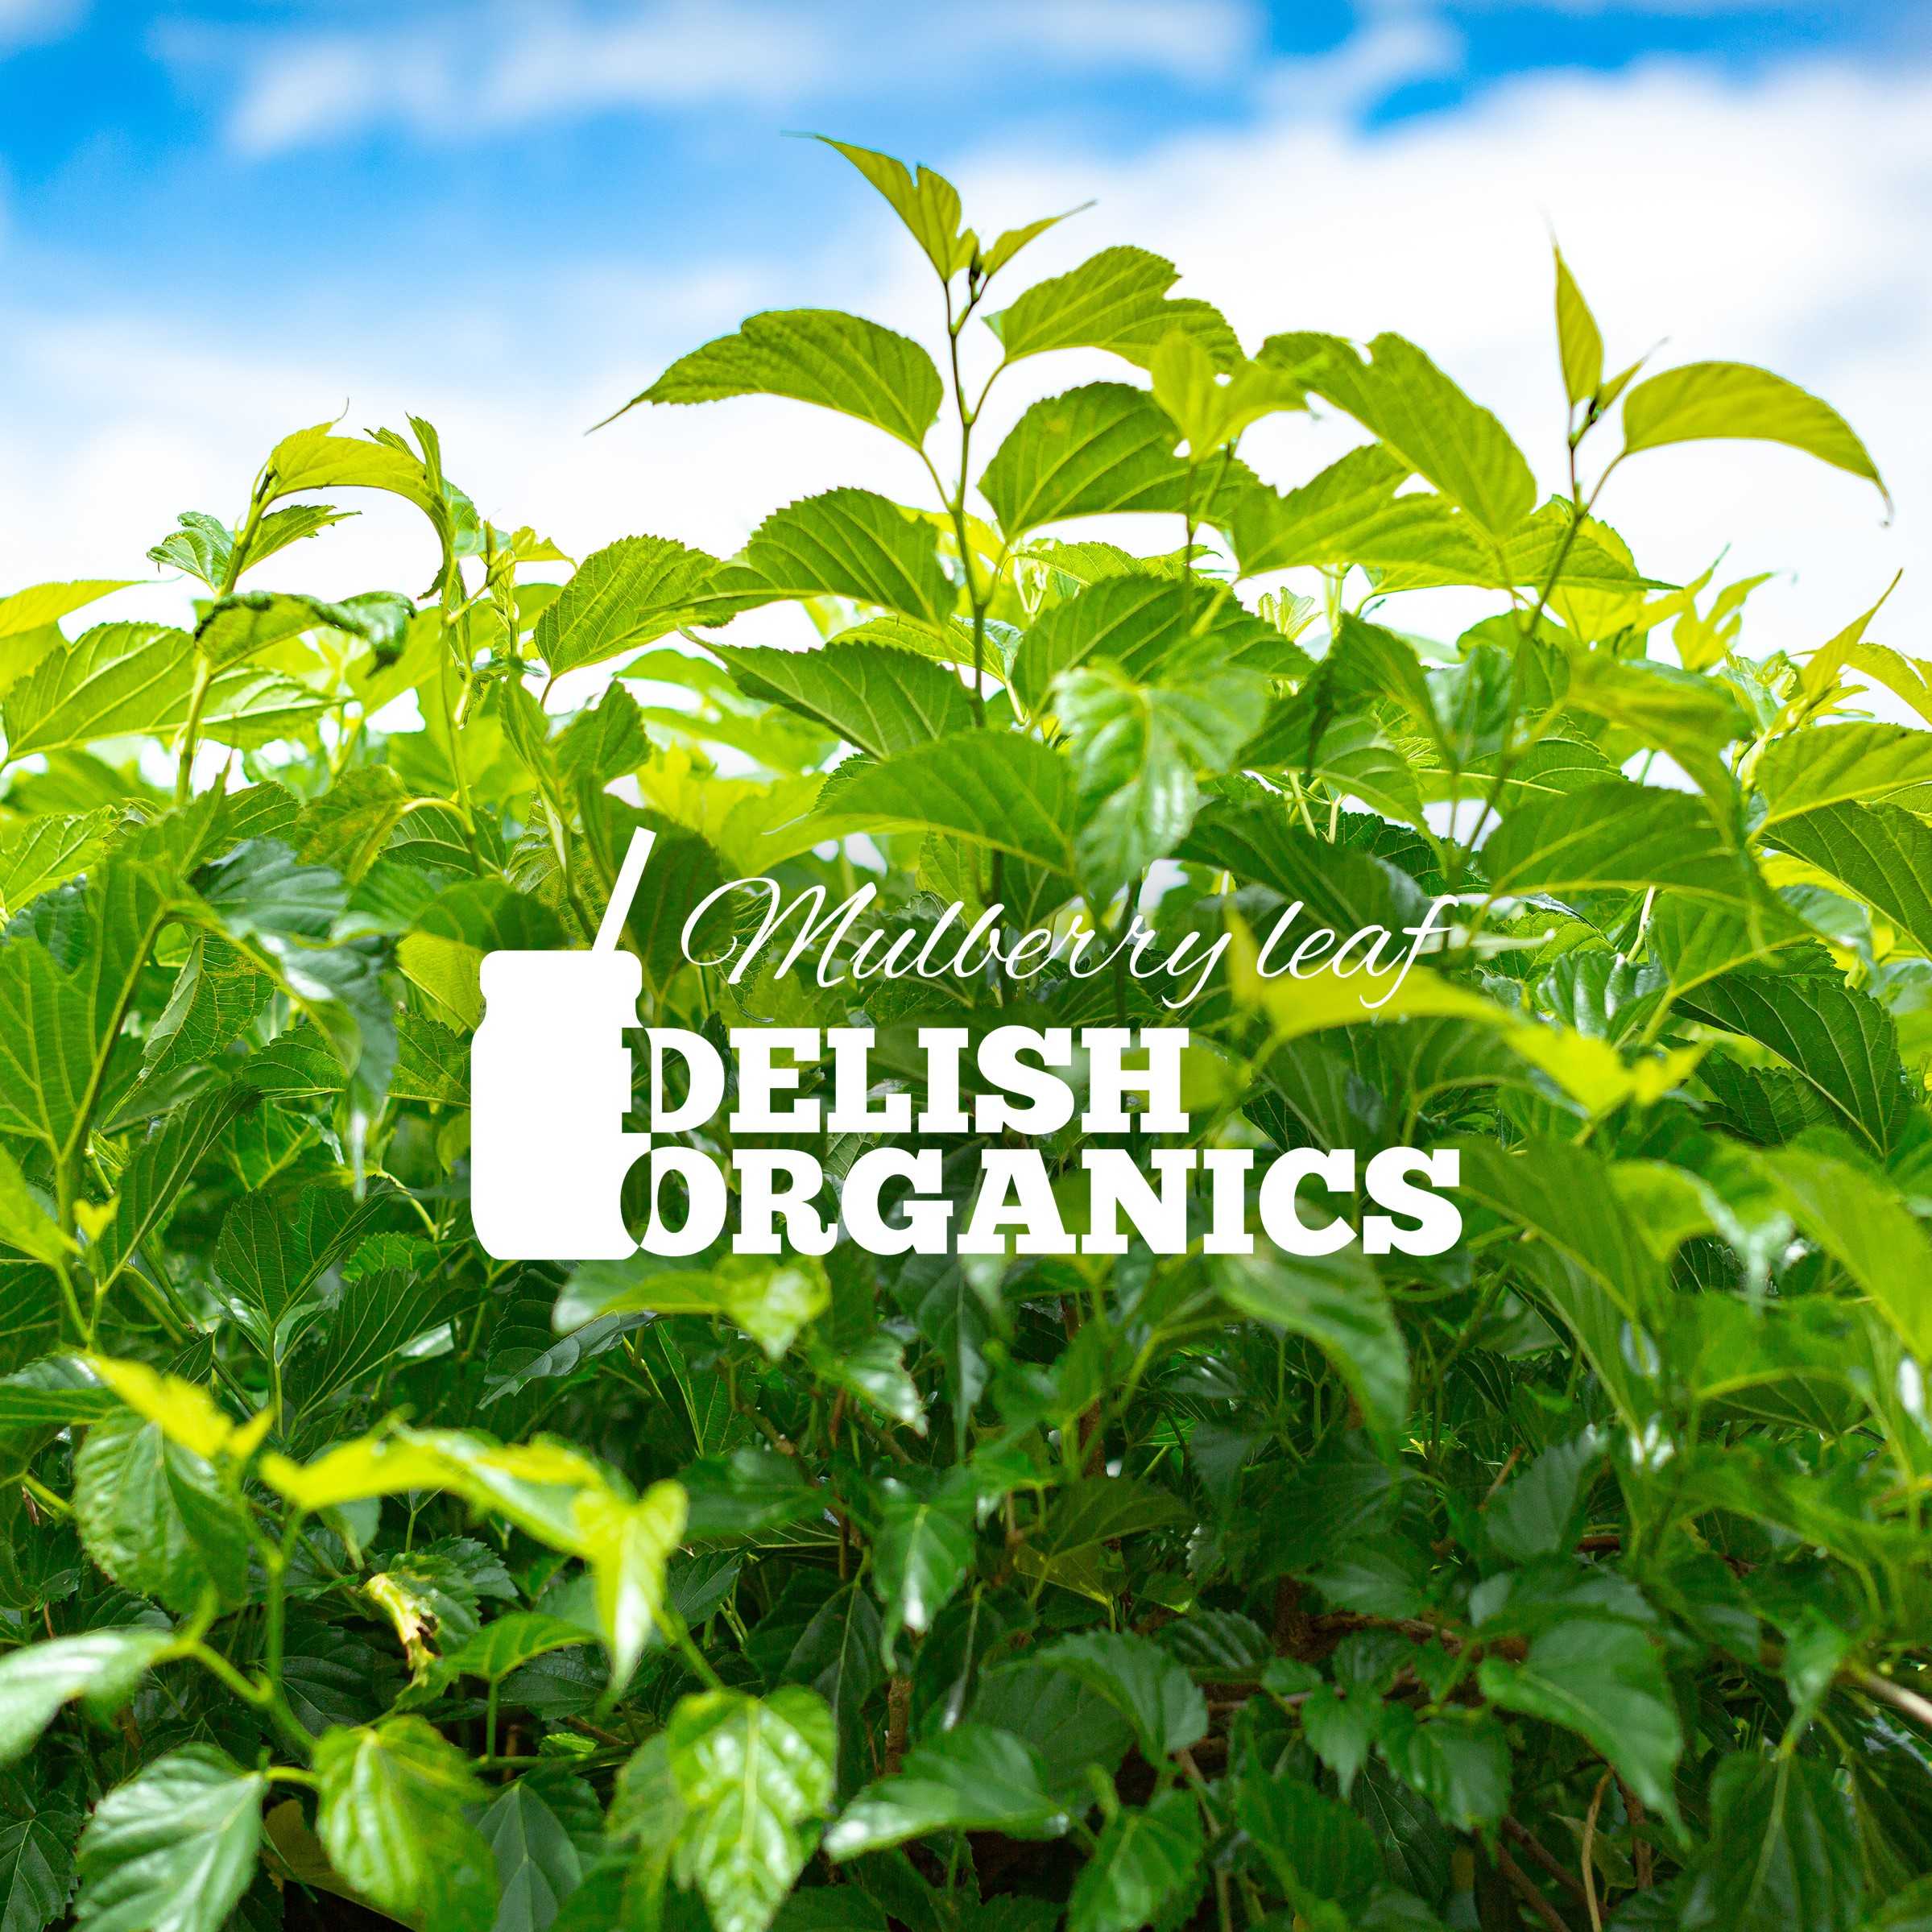 Delish Organics チャンネル開設しました